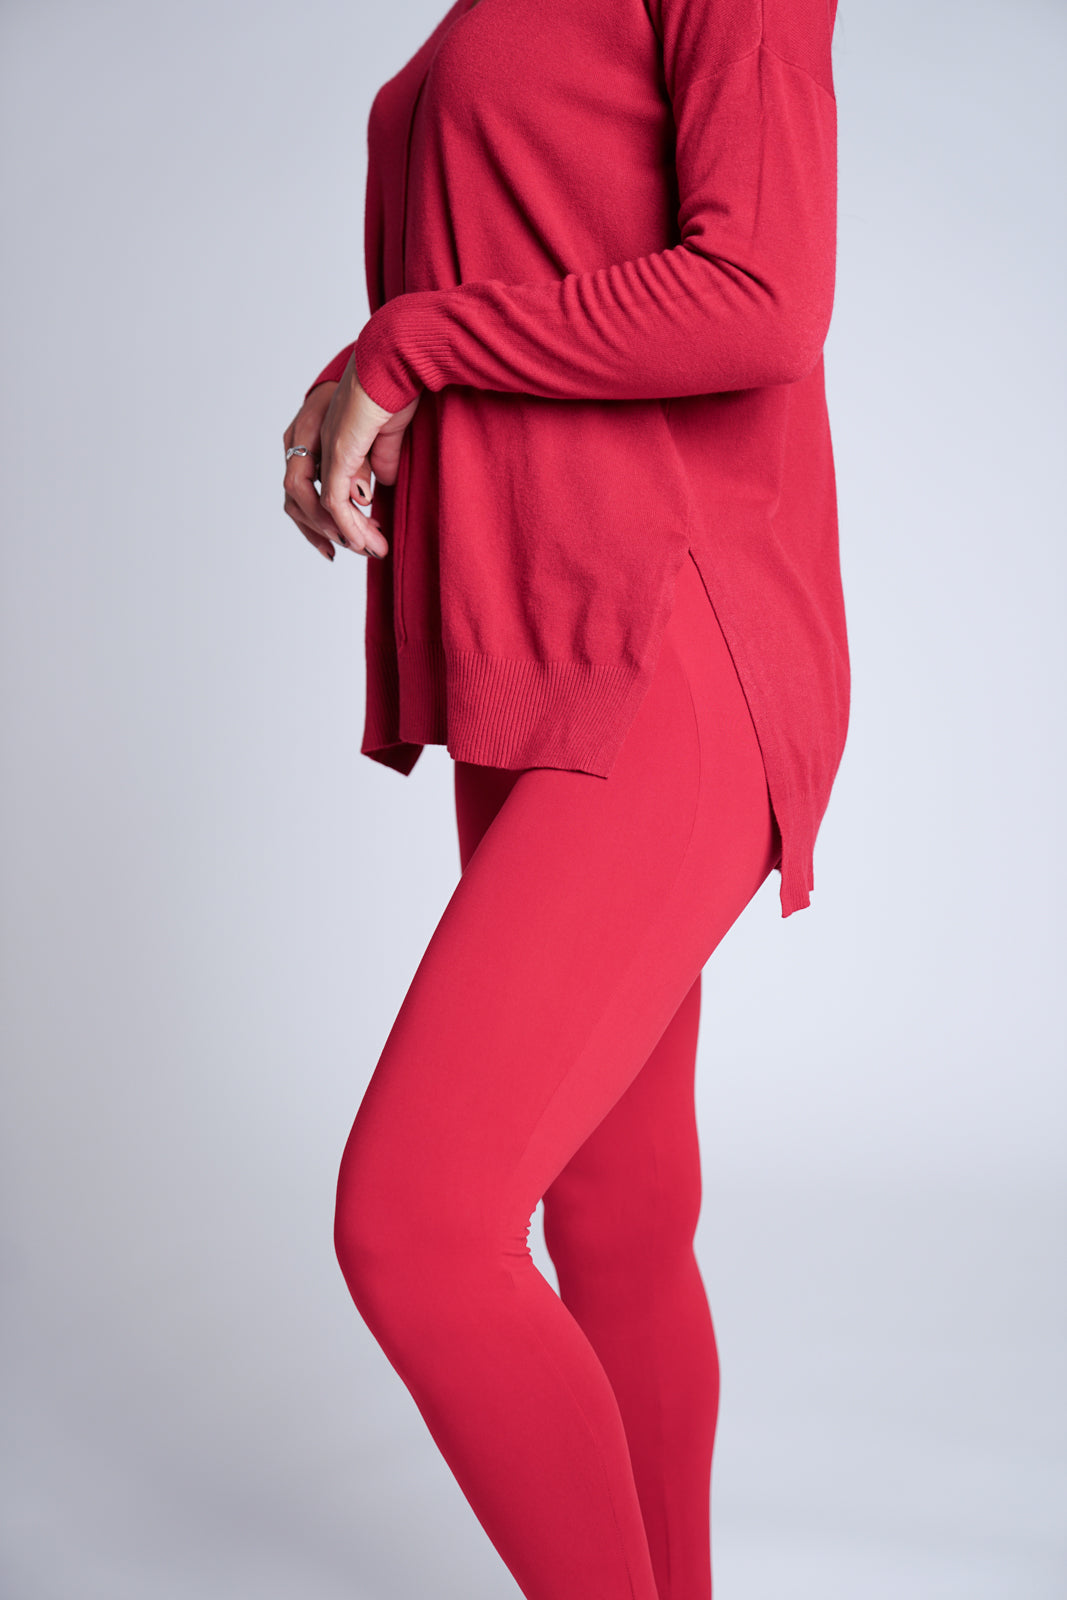 Buy Melange Red Regular Fit Leggings for Women Online @ Tata CLiQ